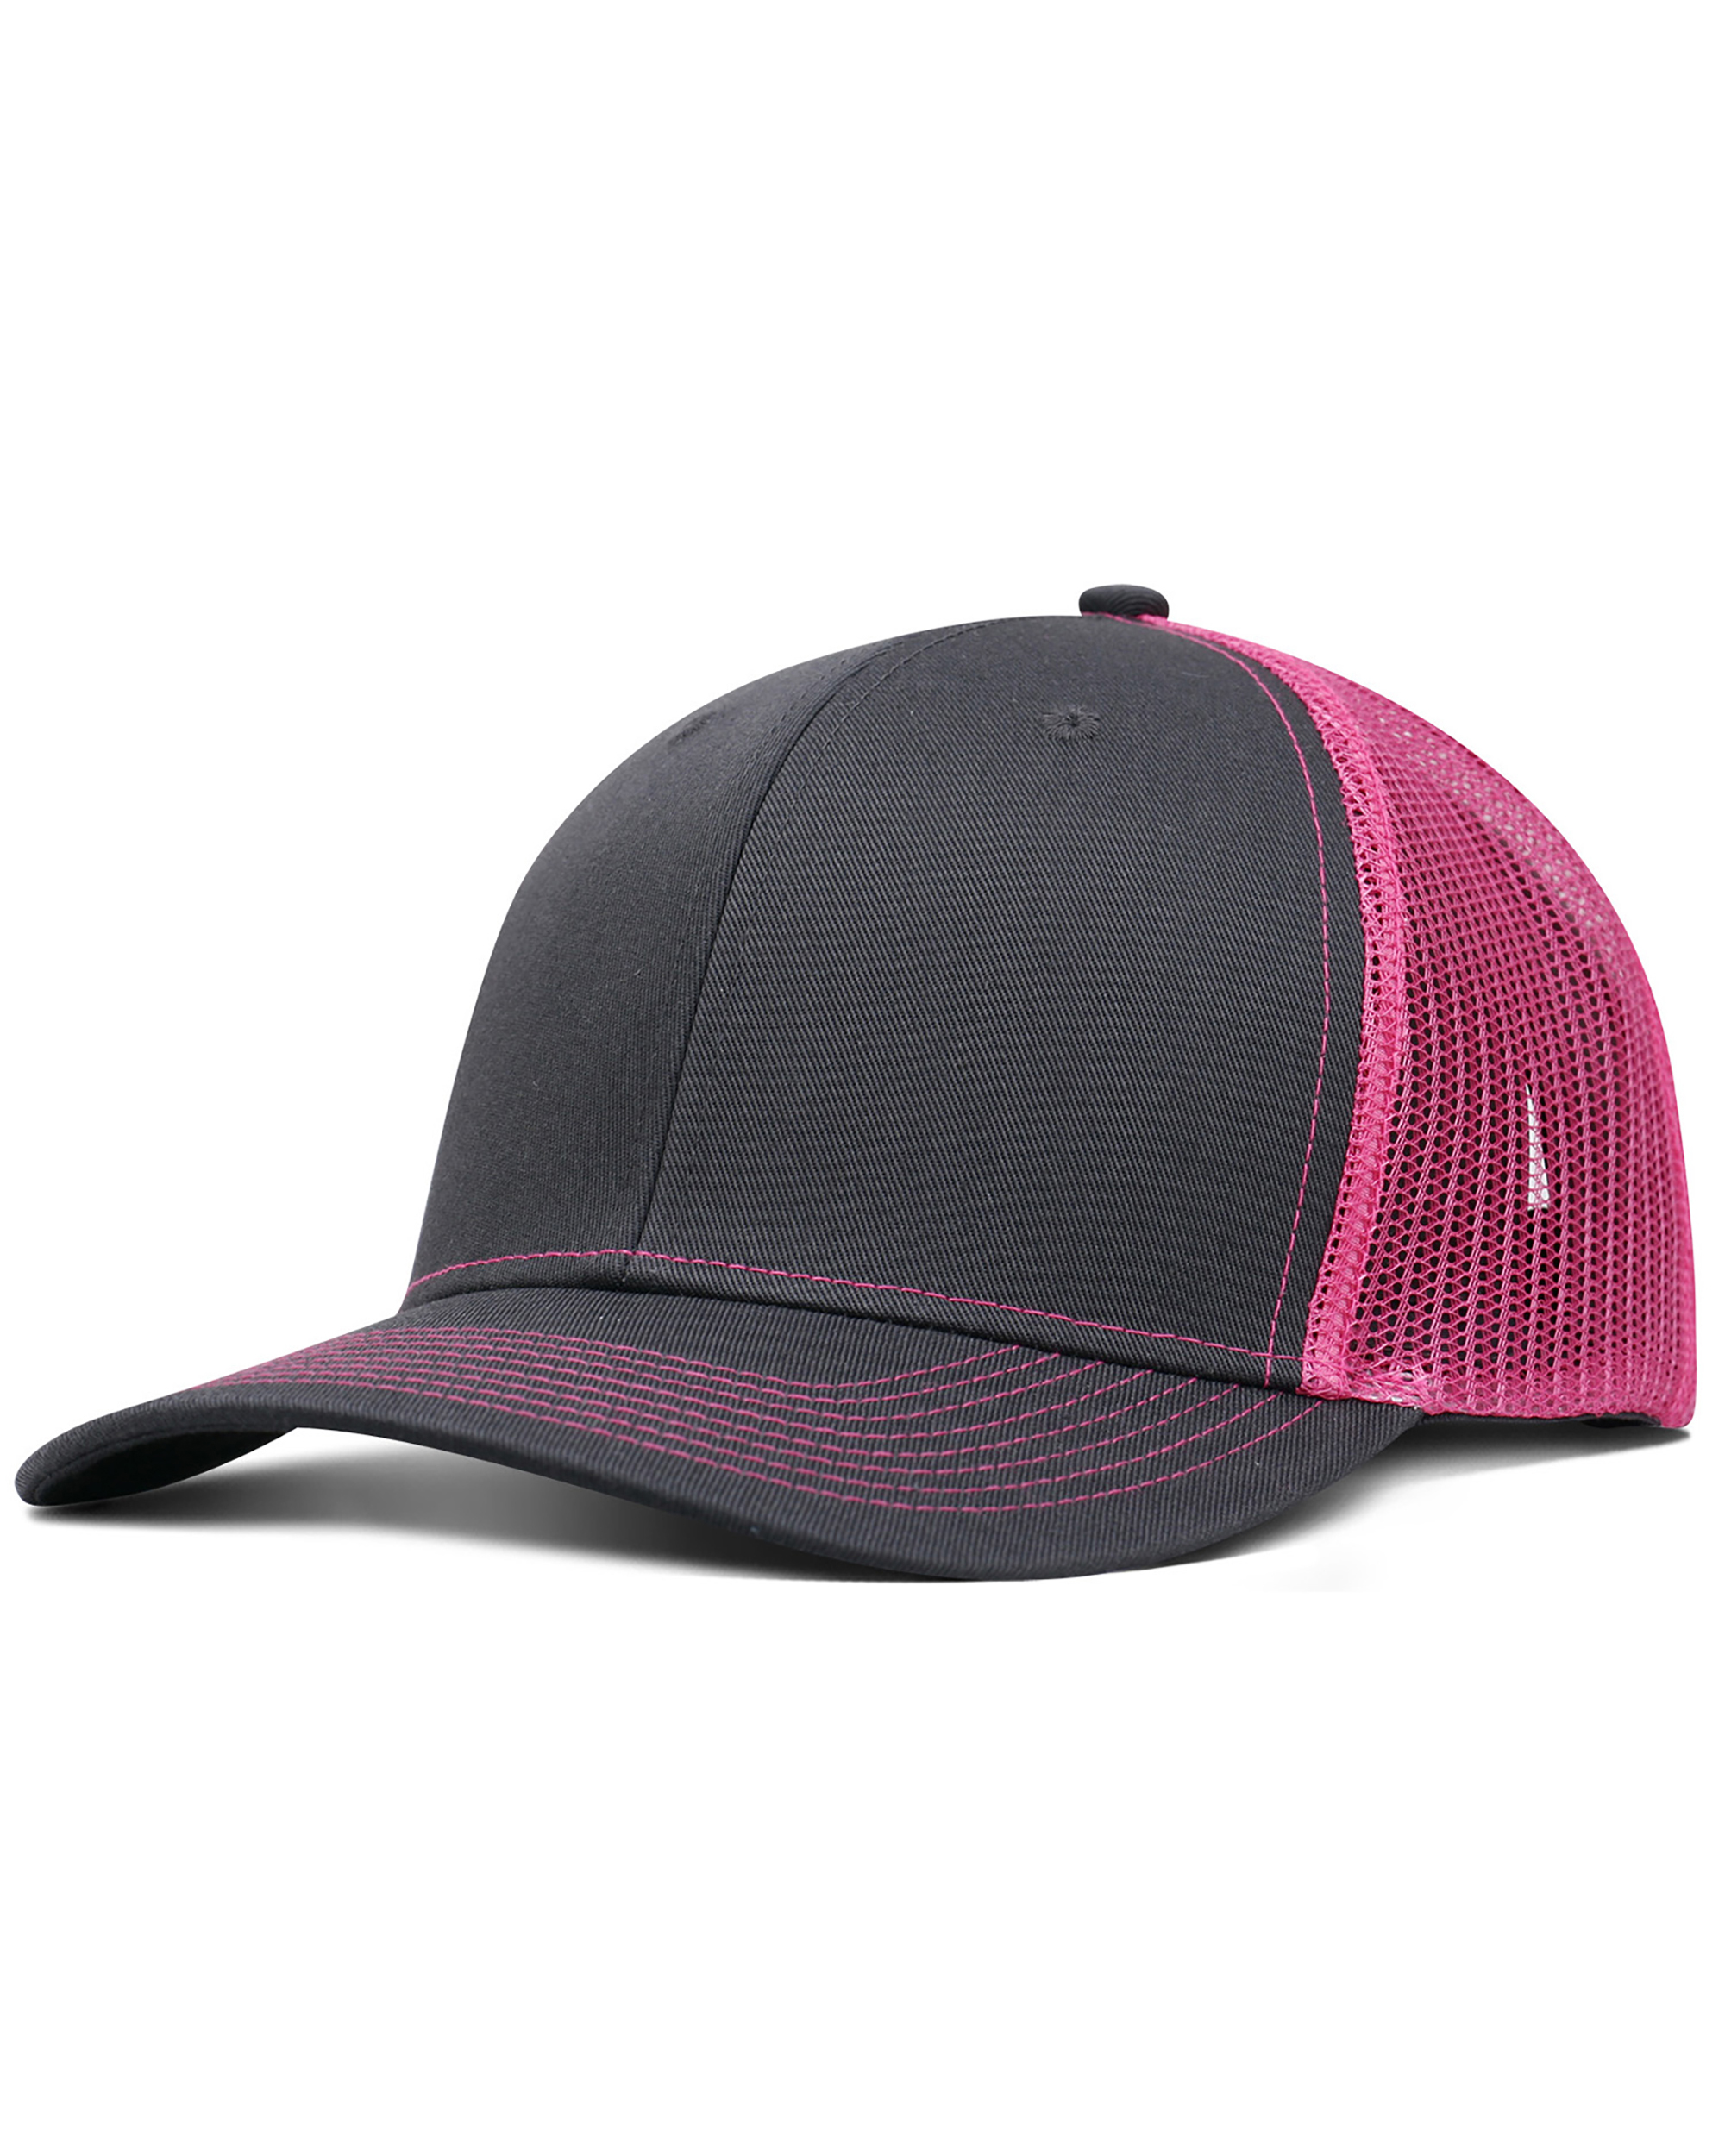 Fahrenheit® F210 Pro Style Trucker Hat